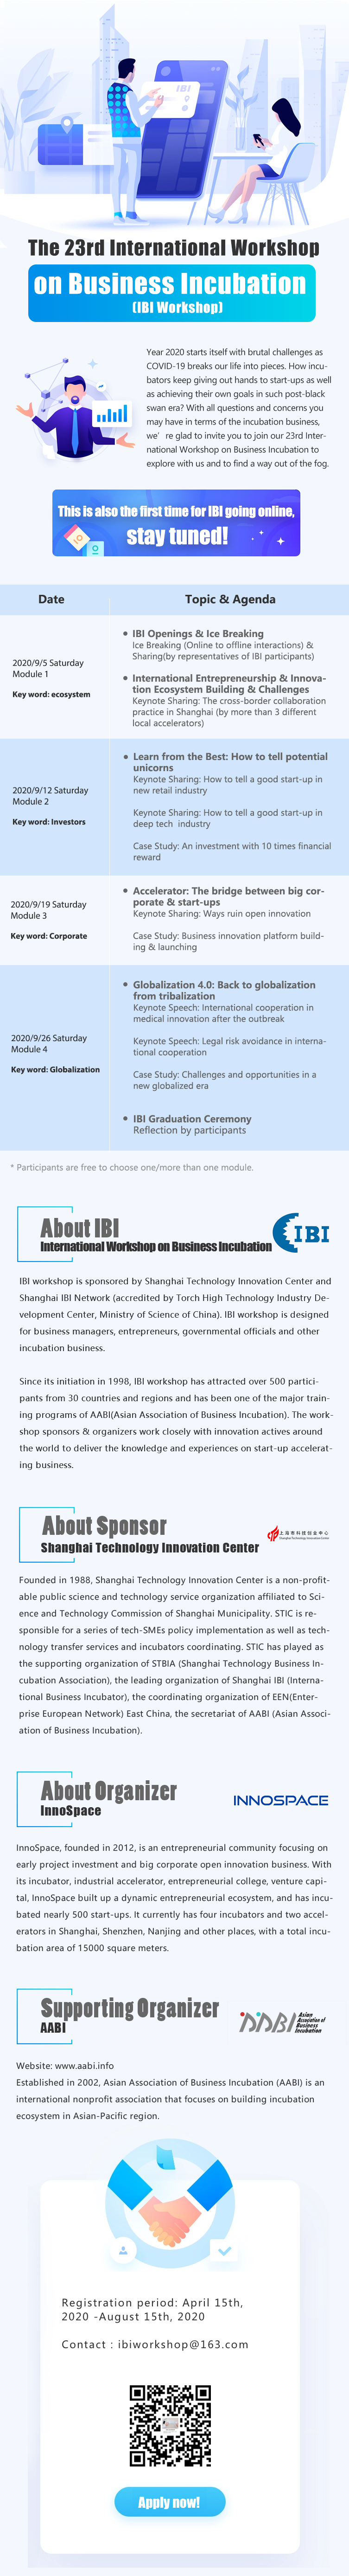 IBI Workshop-2020